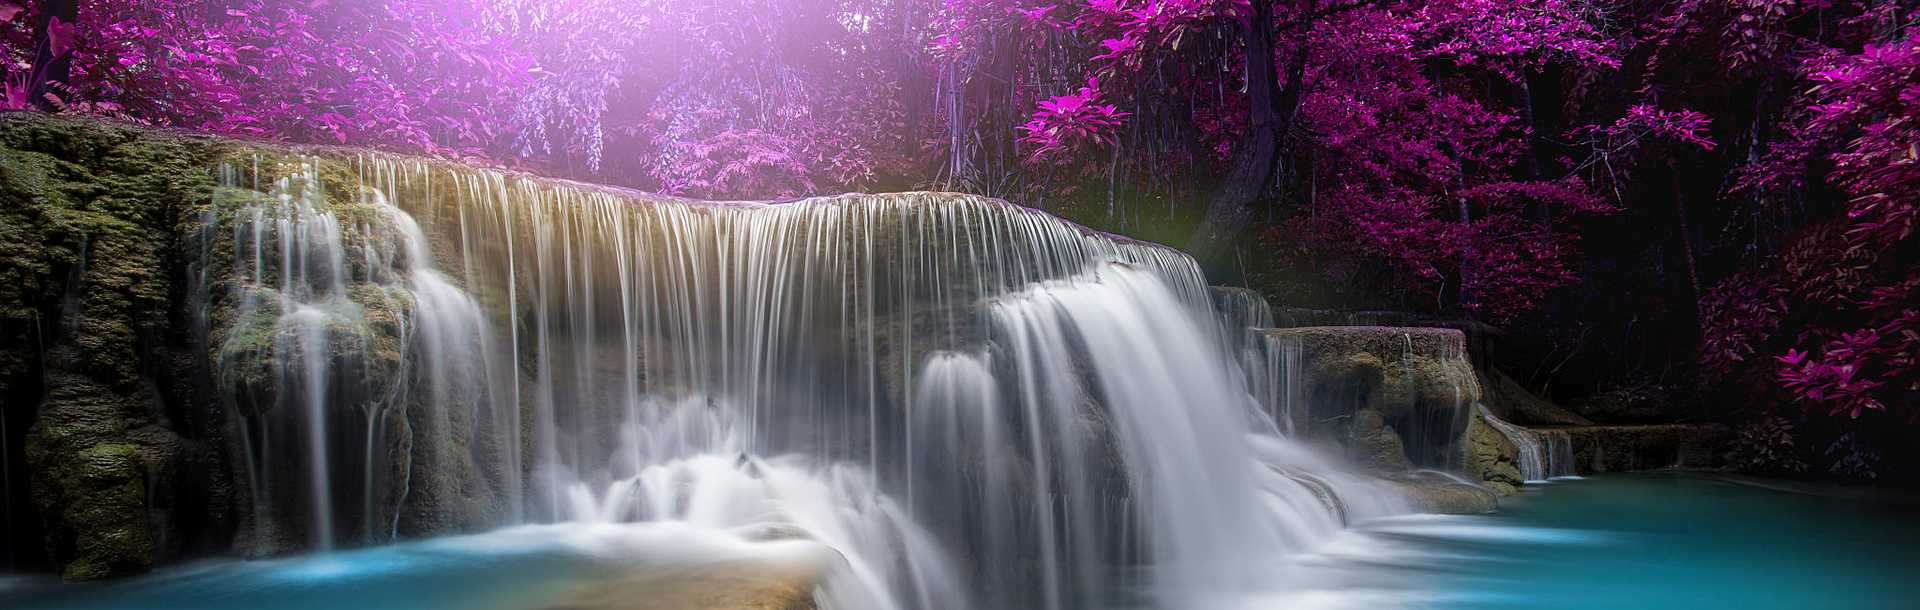 Huay Mae Kamin waterfall in rainforest in Kanchanaburi Province, Thailand.